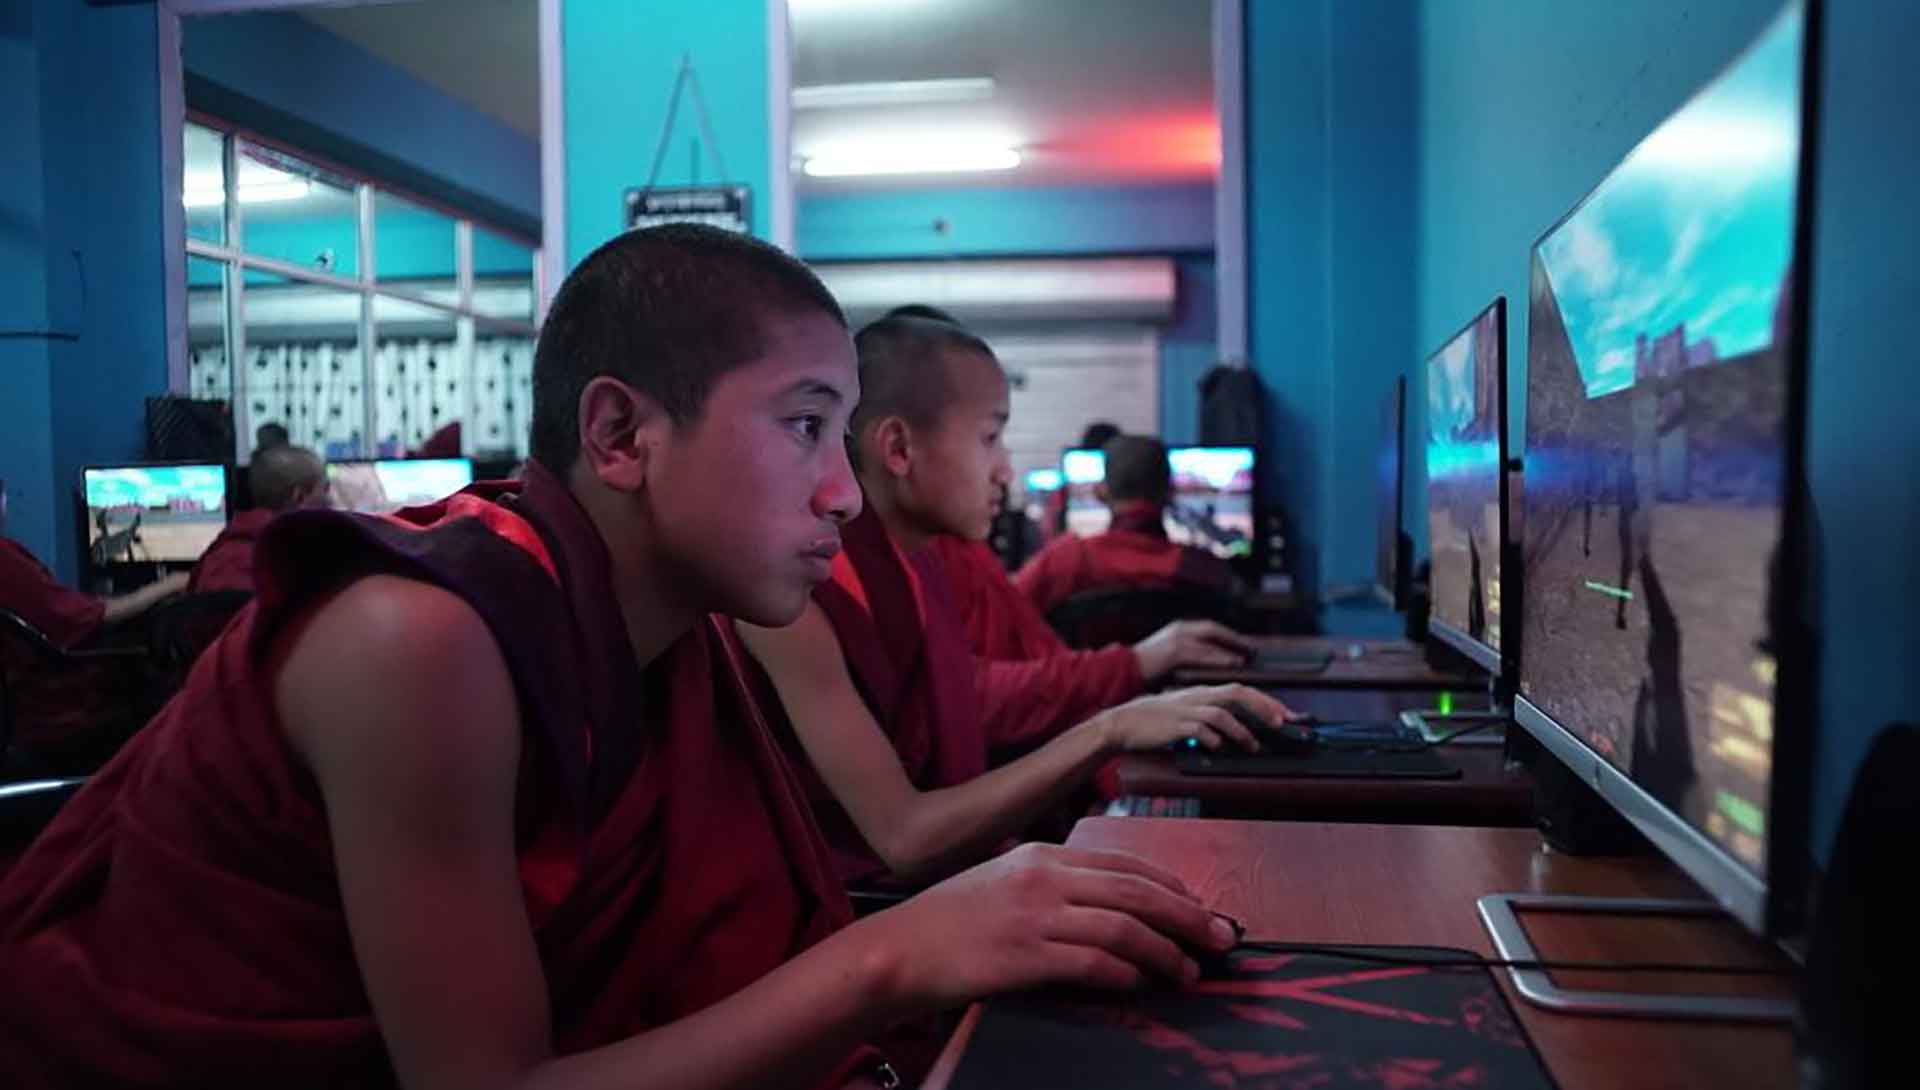 Des moines jouent à des jeux vidéos. Extrait du film Sing Me a Song de Thomas Balmès.